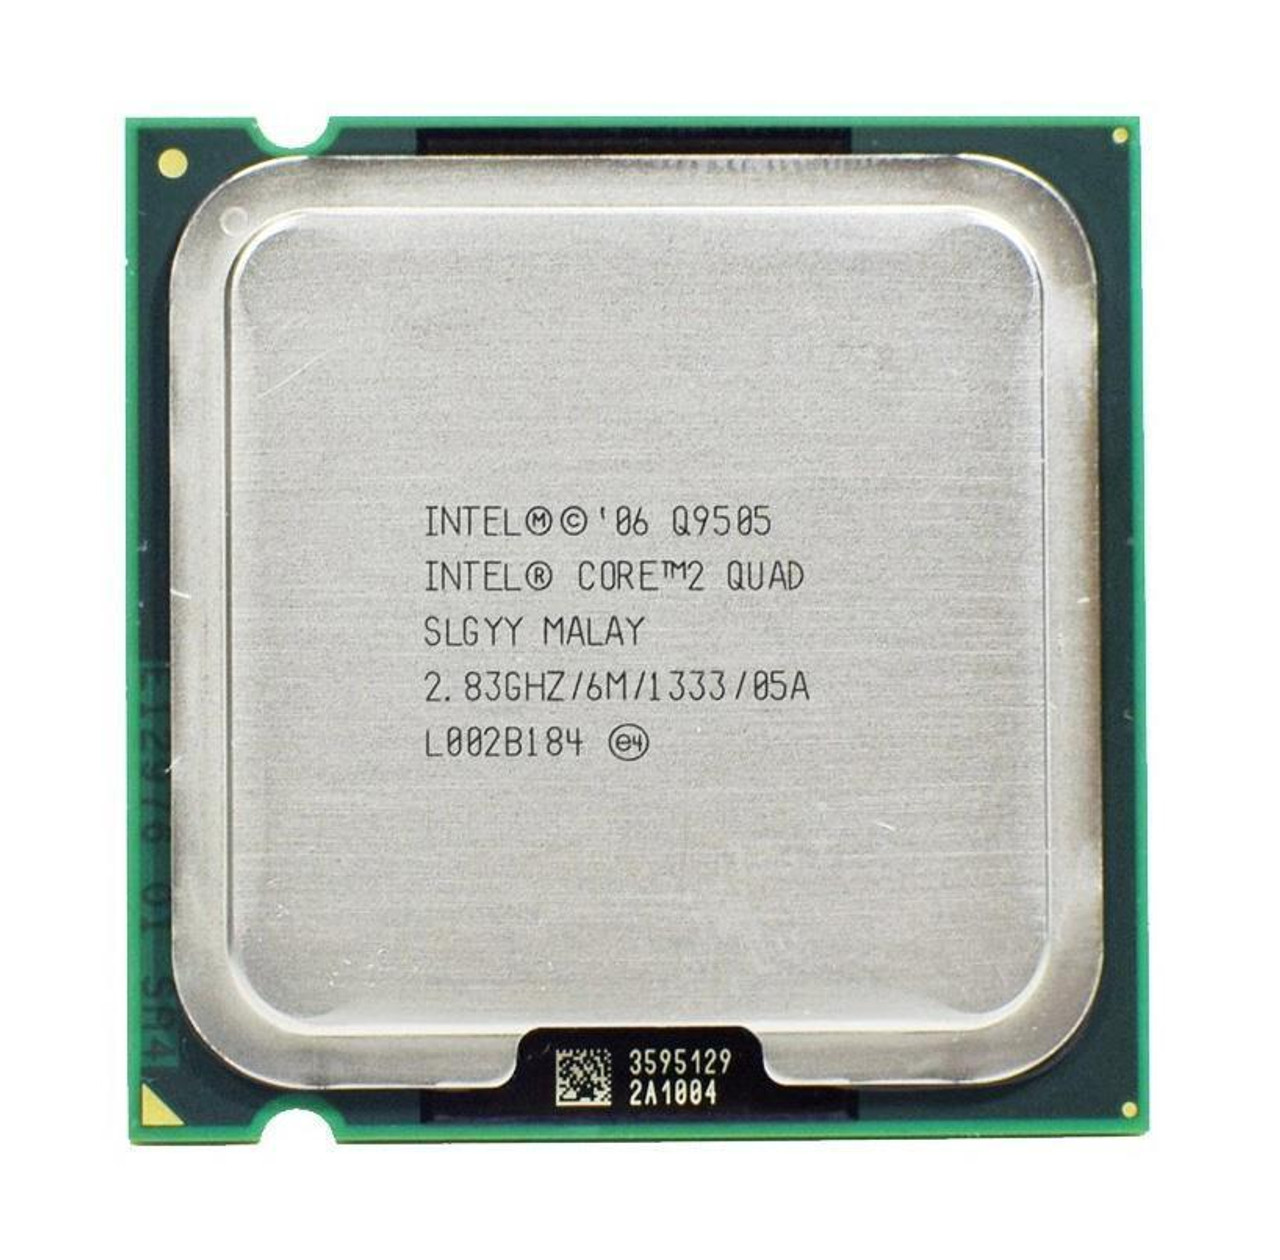 Dell 2.83GHz 1333MHz FSB 6MB L2 Cache Intel Core 2 Quad Q9505 Processor Upgrade